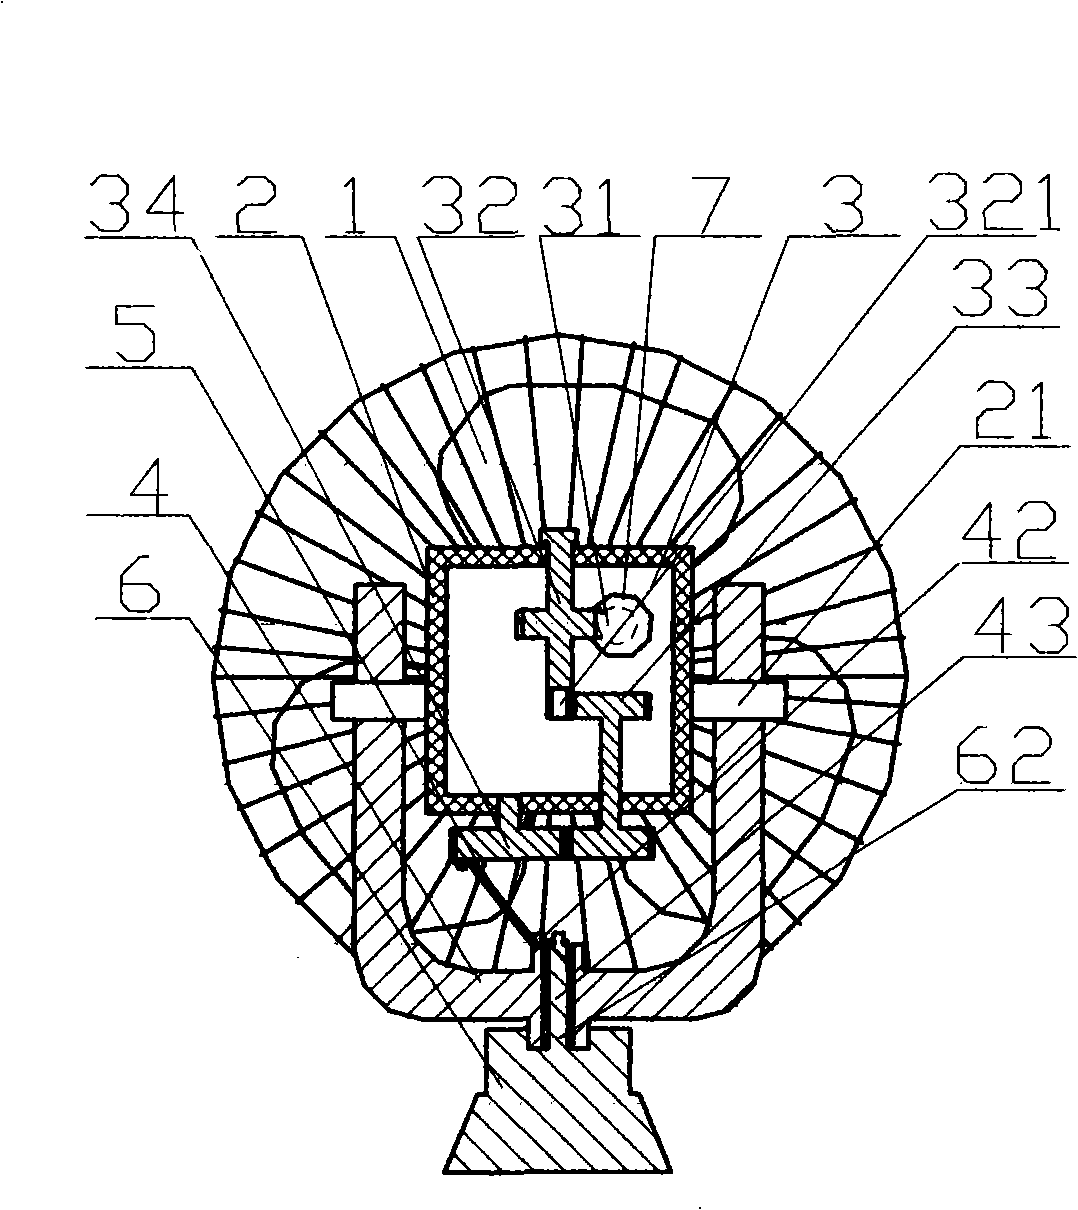 Multi-direction head-swinging type fan